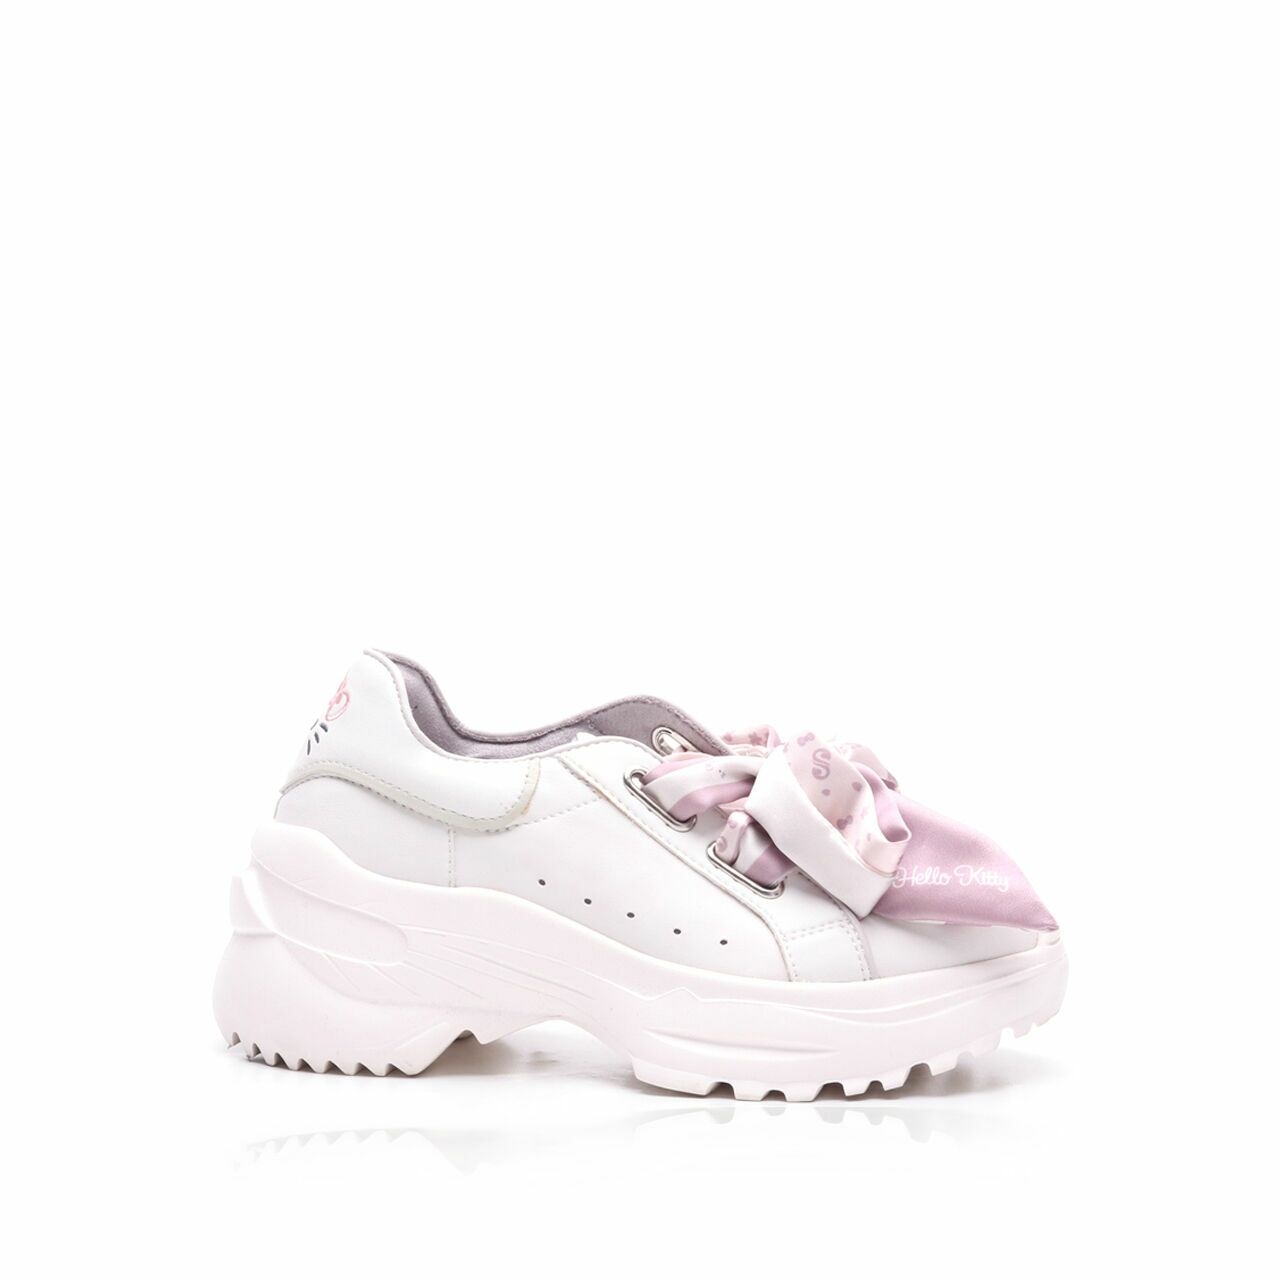 Solesister X Hello Kitty White Sneakers